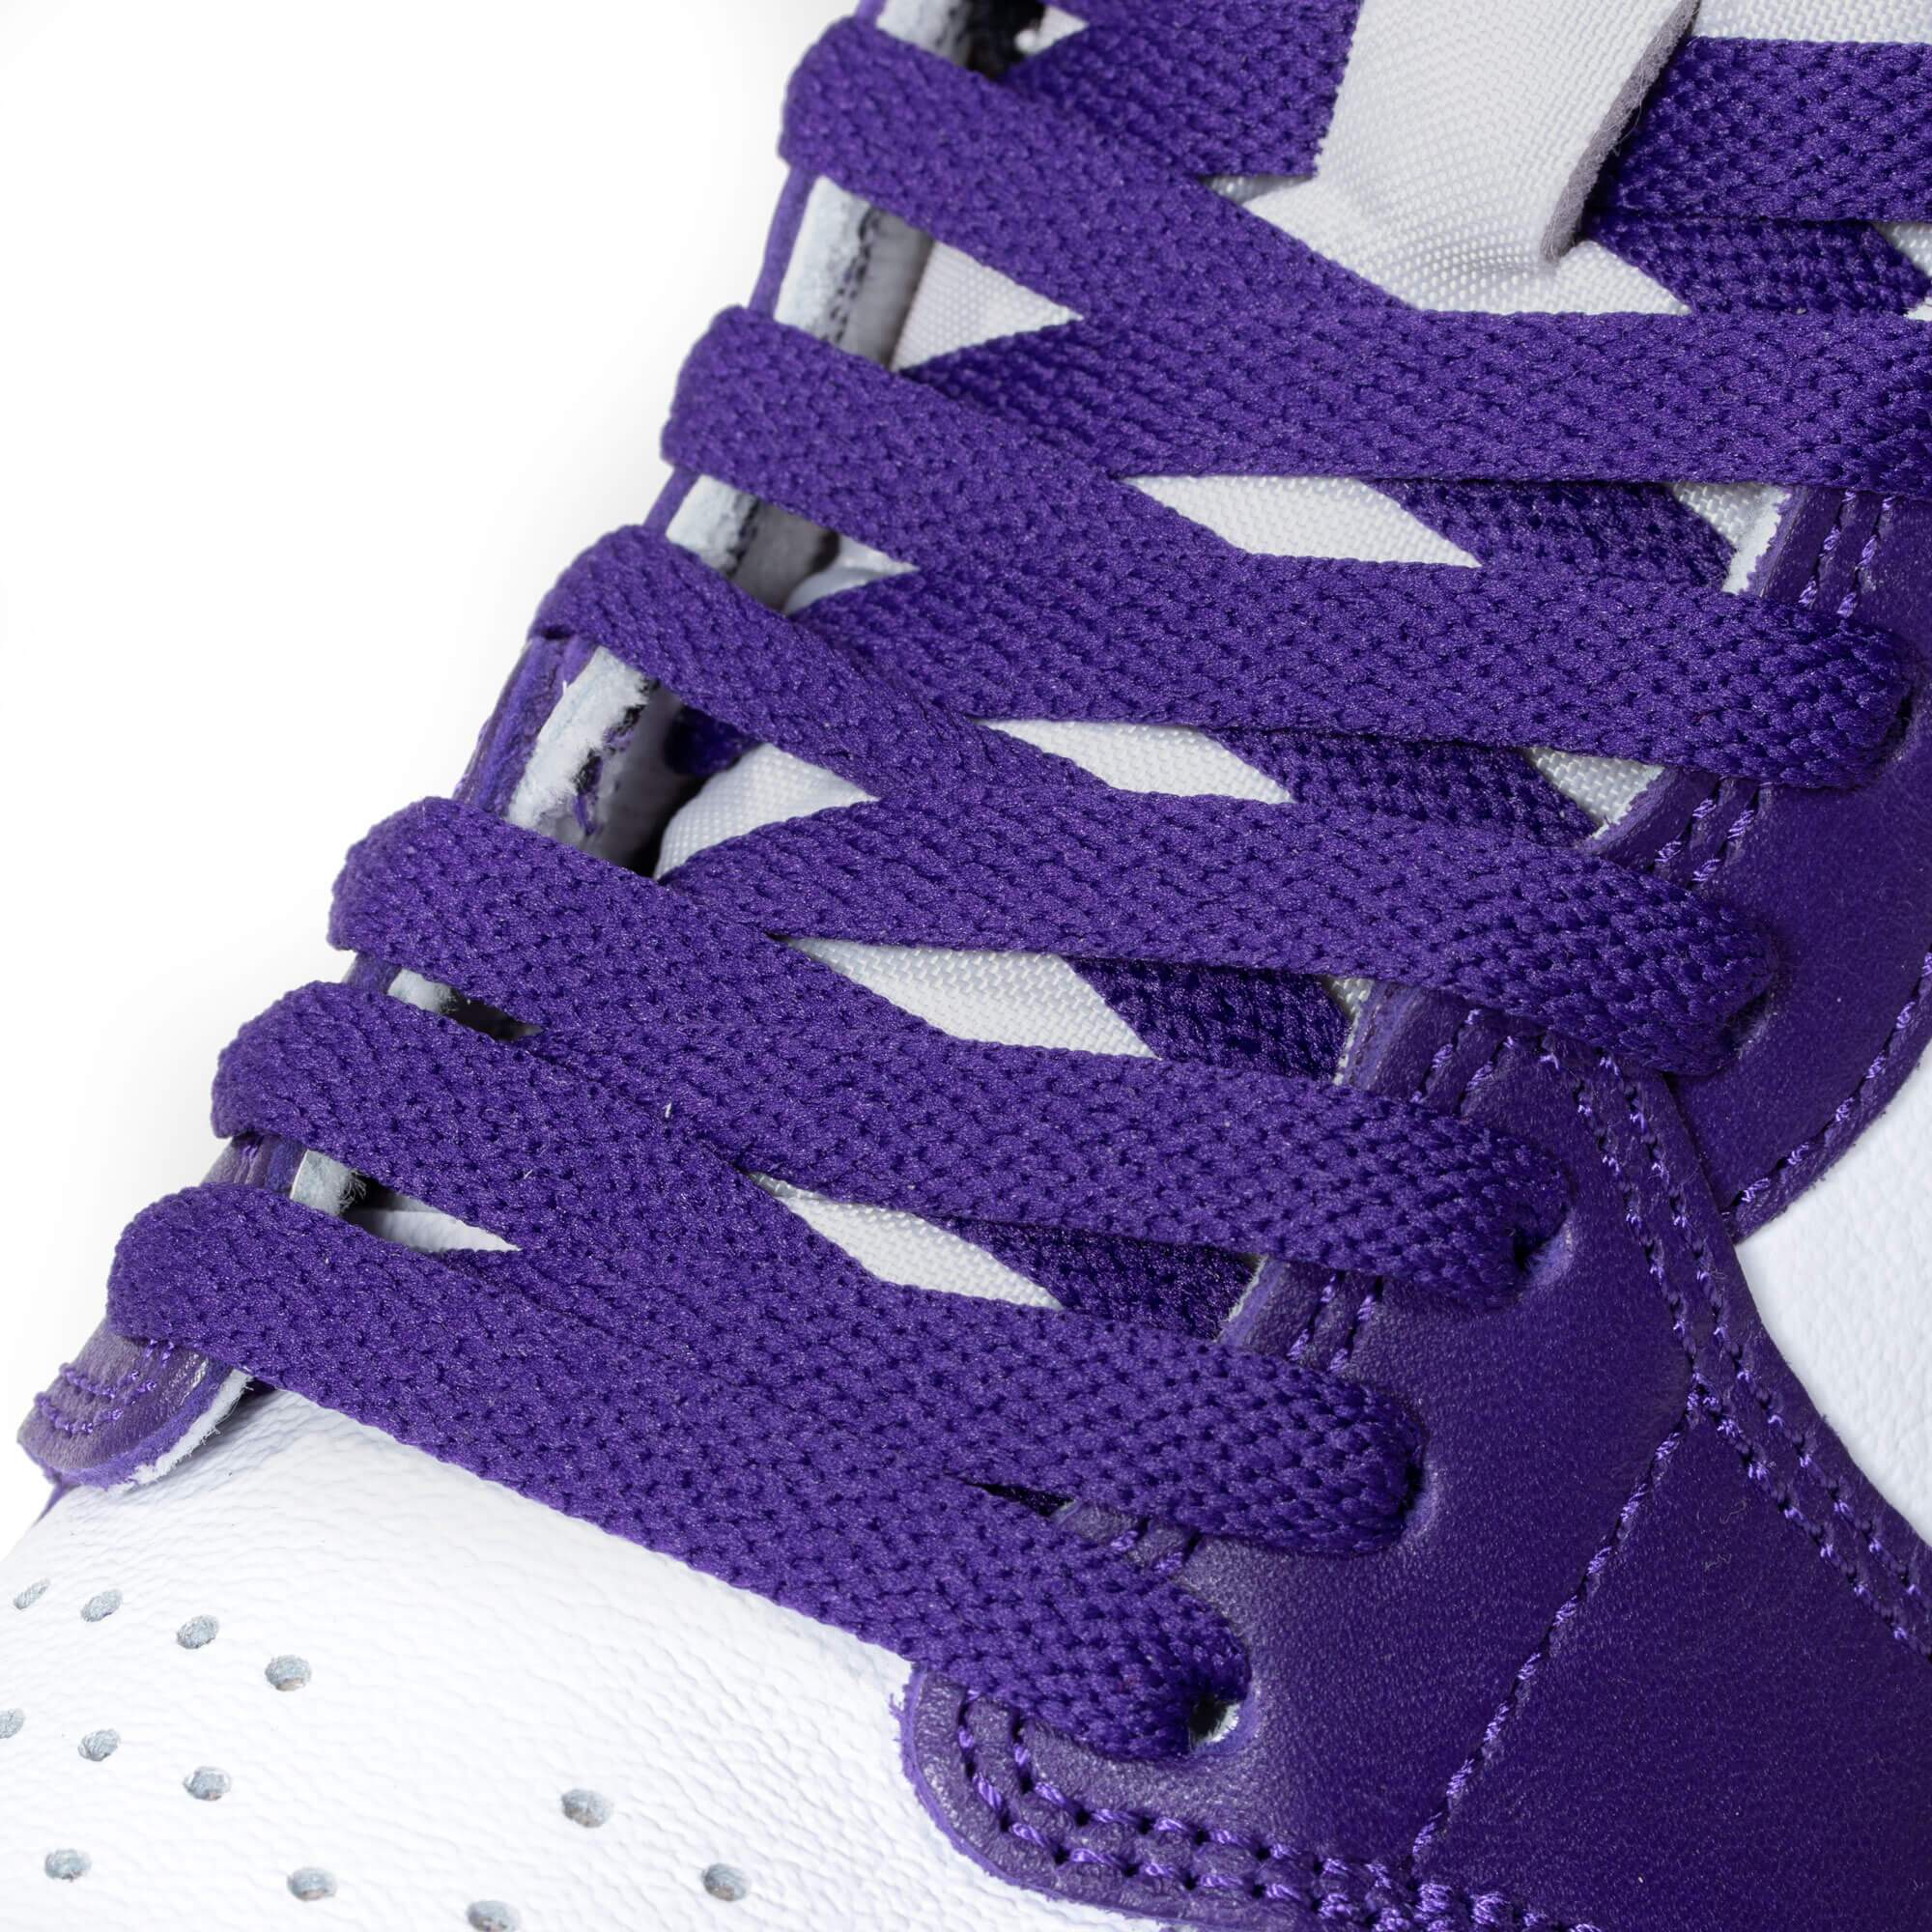 court purple 2.0 laces